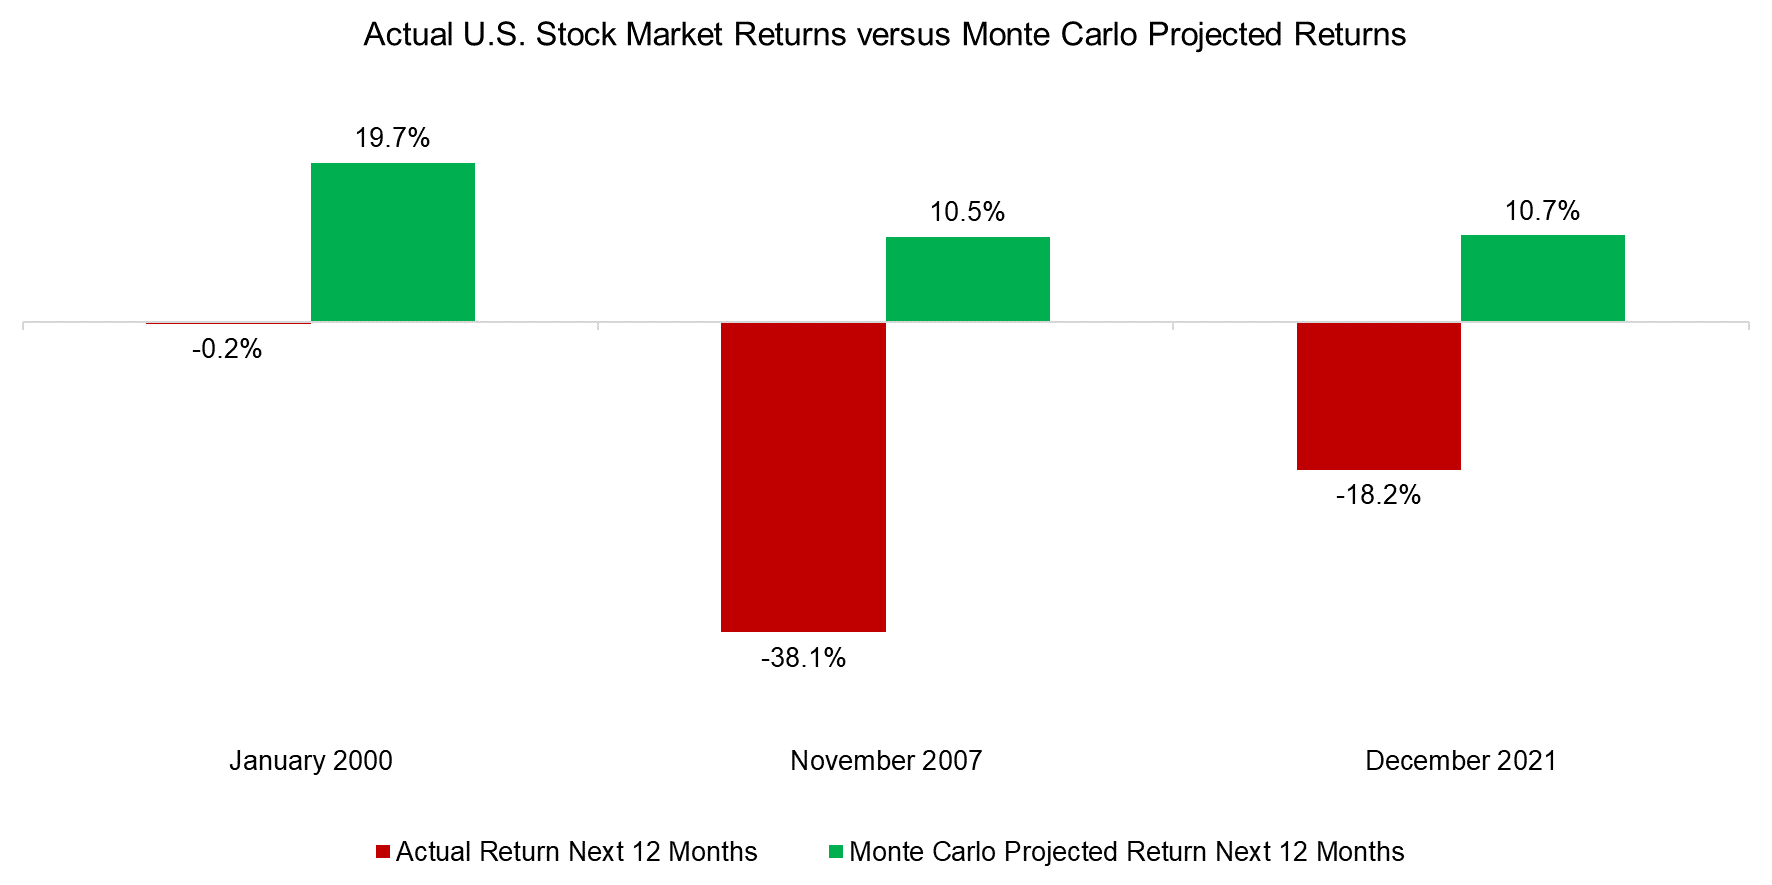 Actual U.S. Stock Market Returns versus Monte Carlo Projected Returns